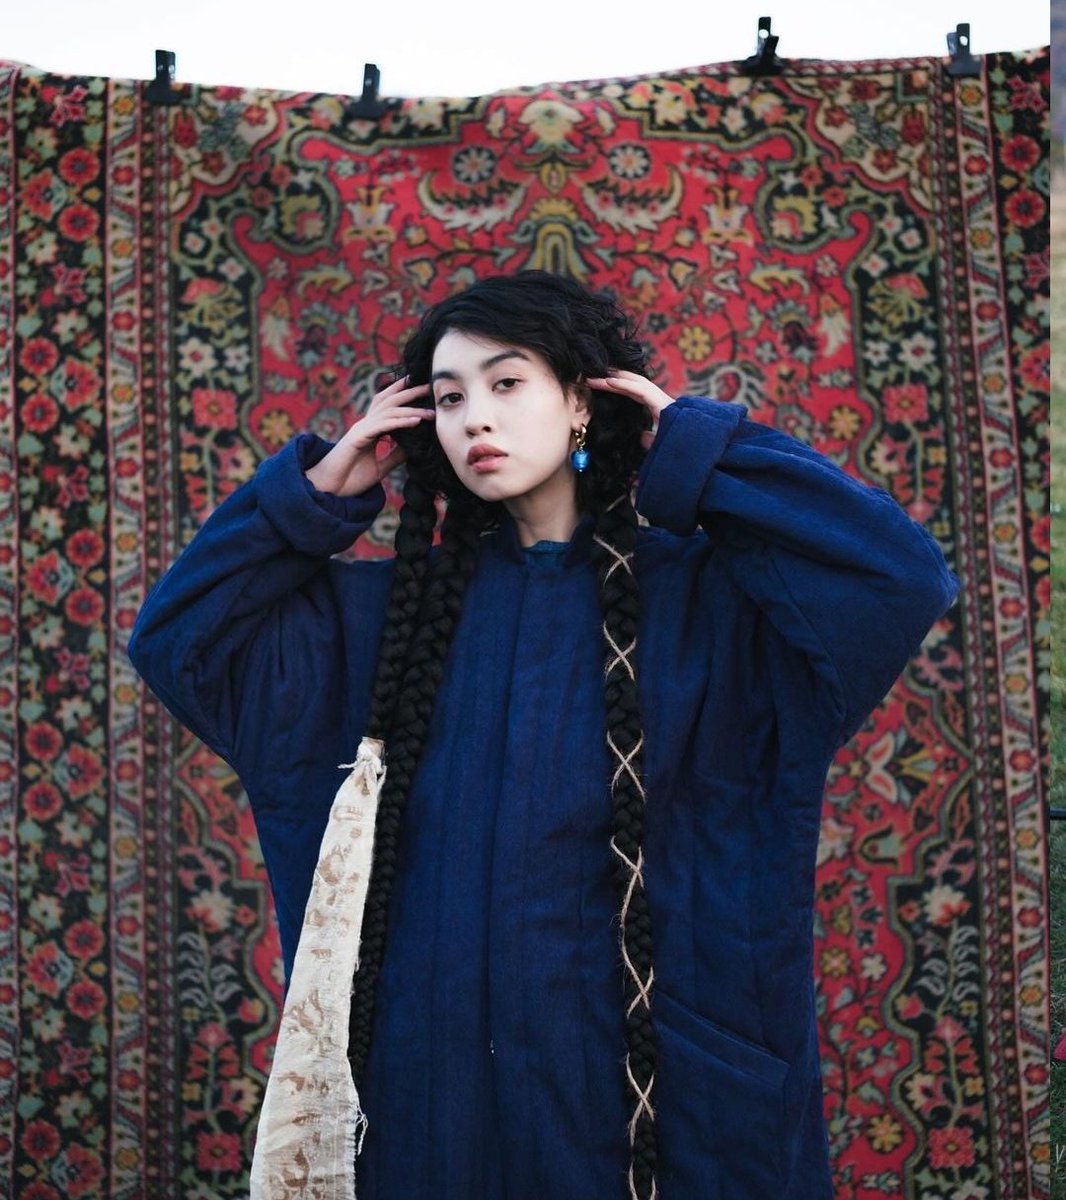 Kazakh etno fashion Almaty Kazakhstan 🇰🇿